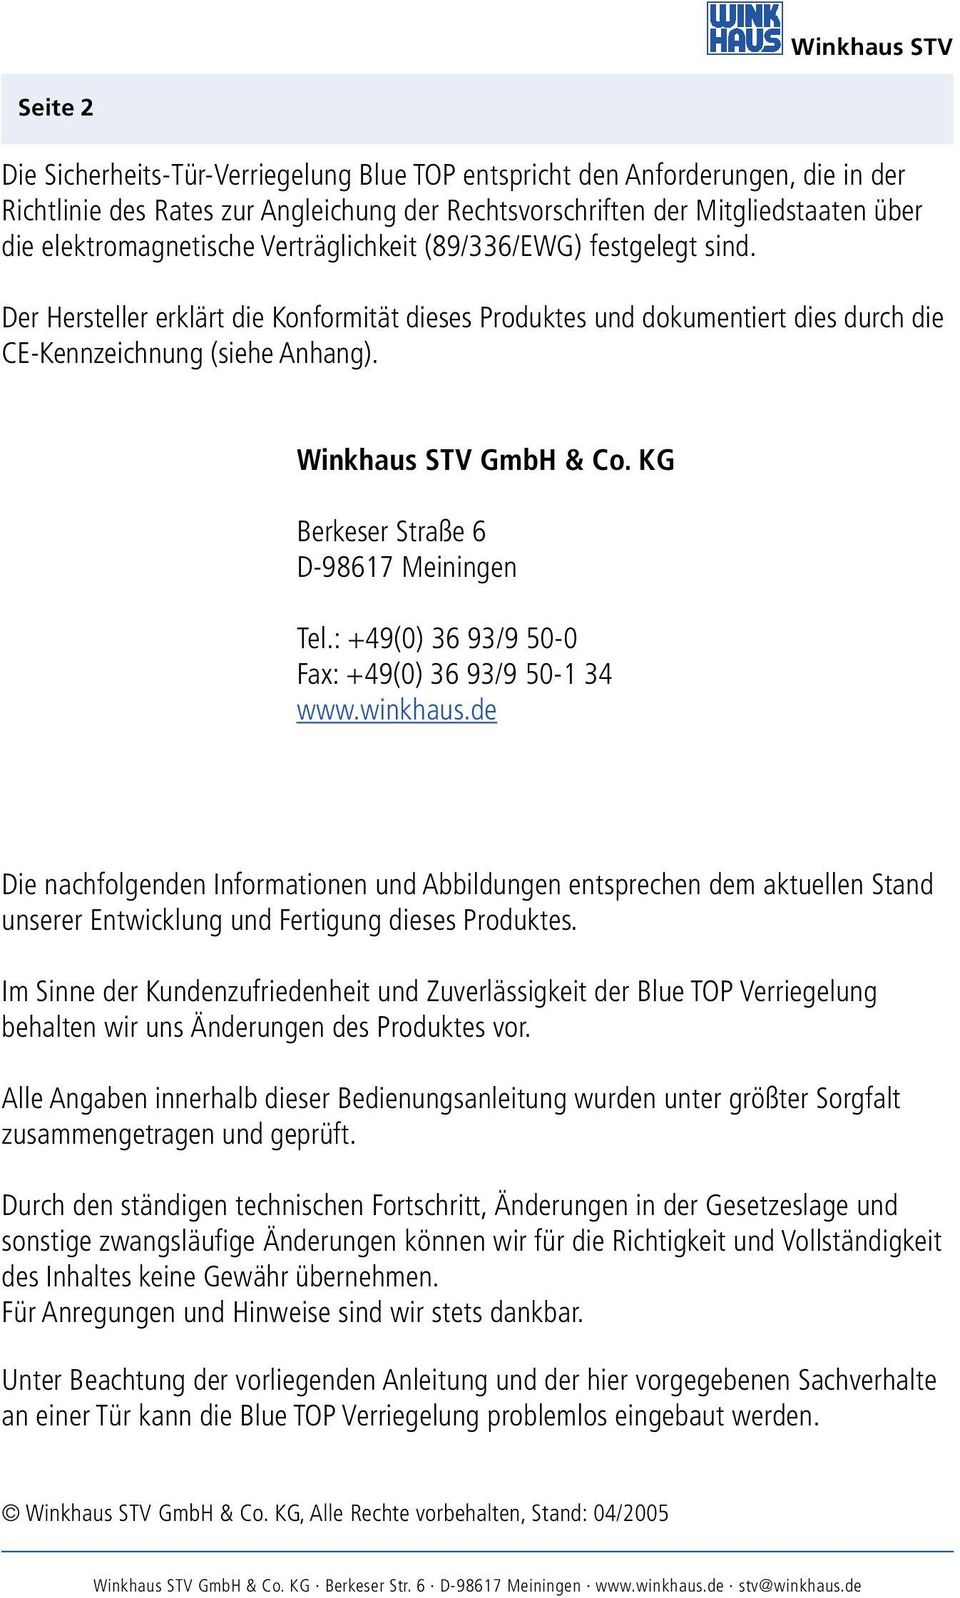 Winkhaus STV GmbH & Co. KG Berkeser Straße 6 D-98617 Meiningen Tel.: +49(0) 36 93/9 50-0 Fax: +49(0) 36 93/9 50-1 34 www.winkhaus.